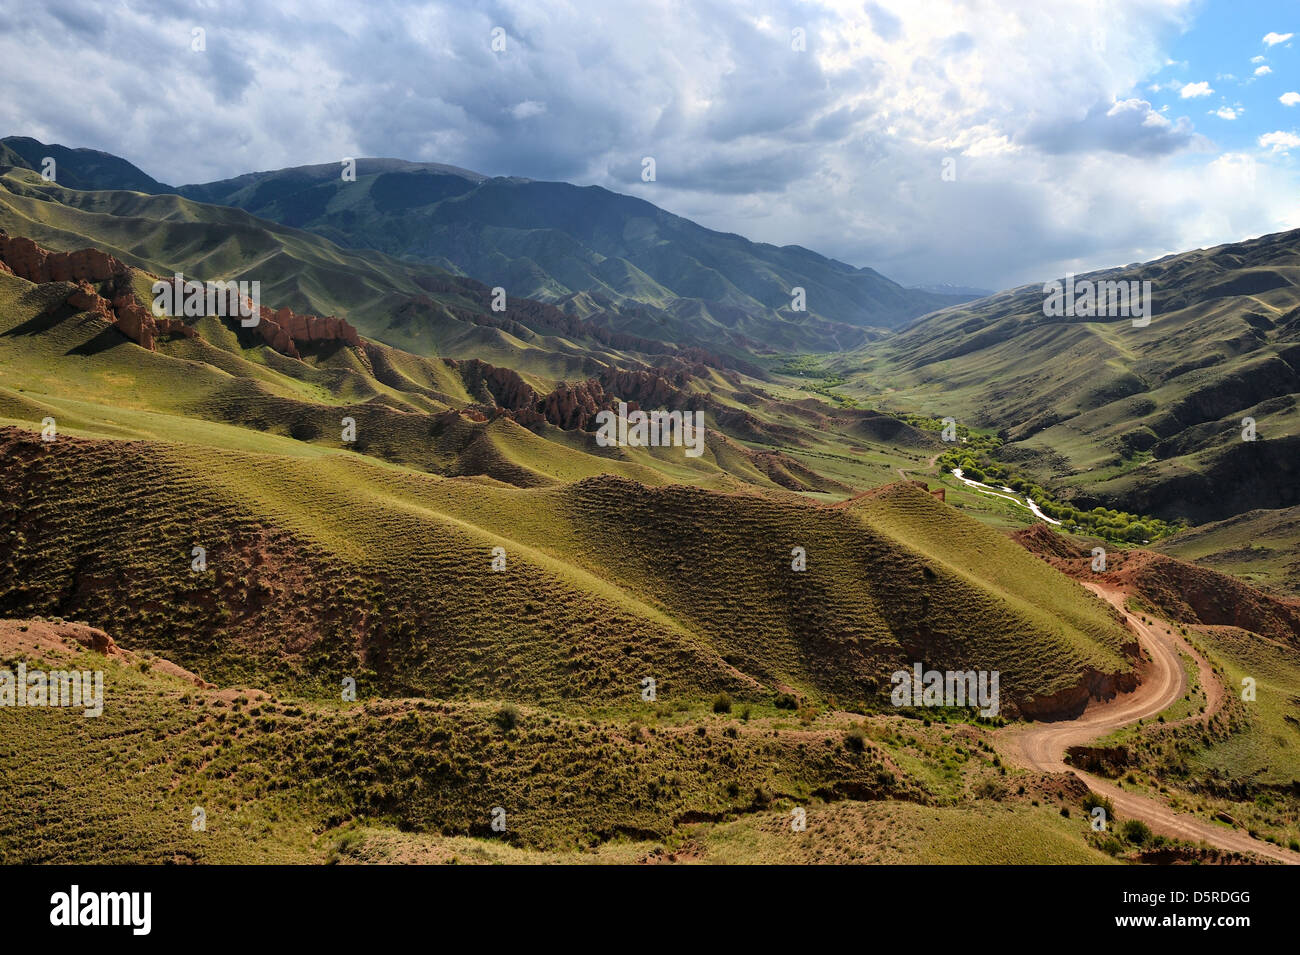 Route dans la vallée, l'asy river canyon, Kazakhstan Banque D'Images